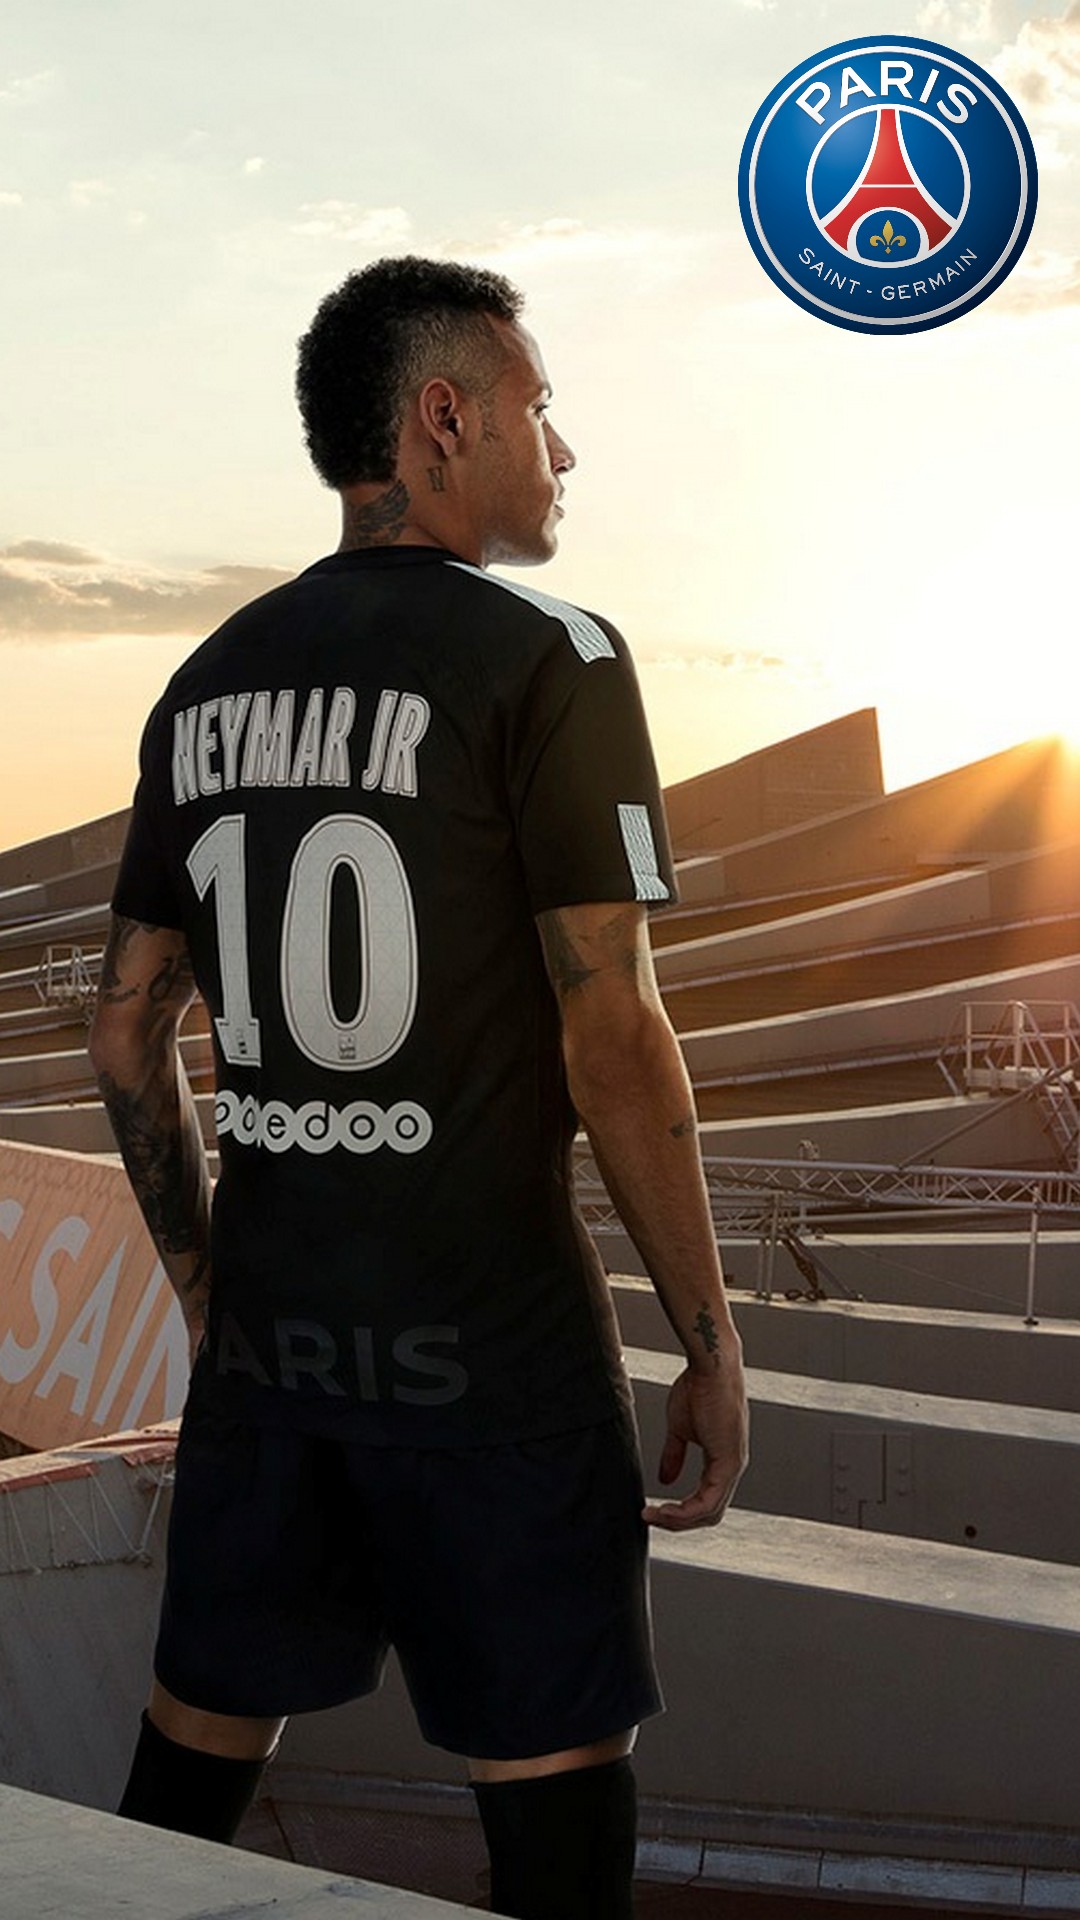 fond d'écran neymar iphone,jersey,tenue de sport,t shirt,joueur,équipe